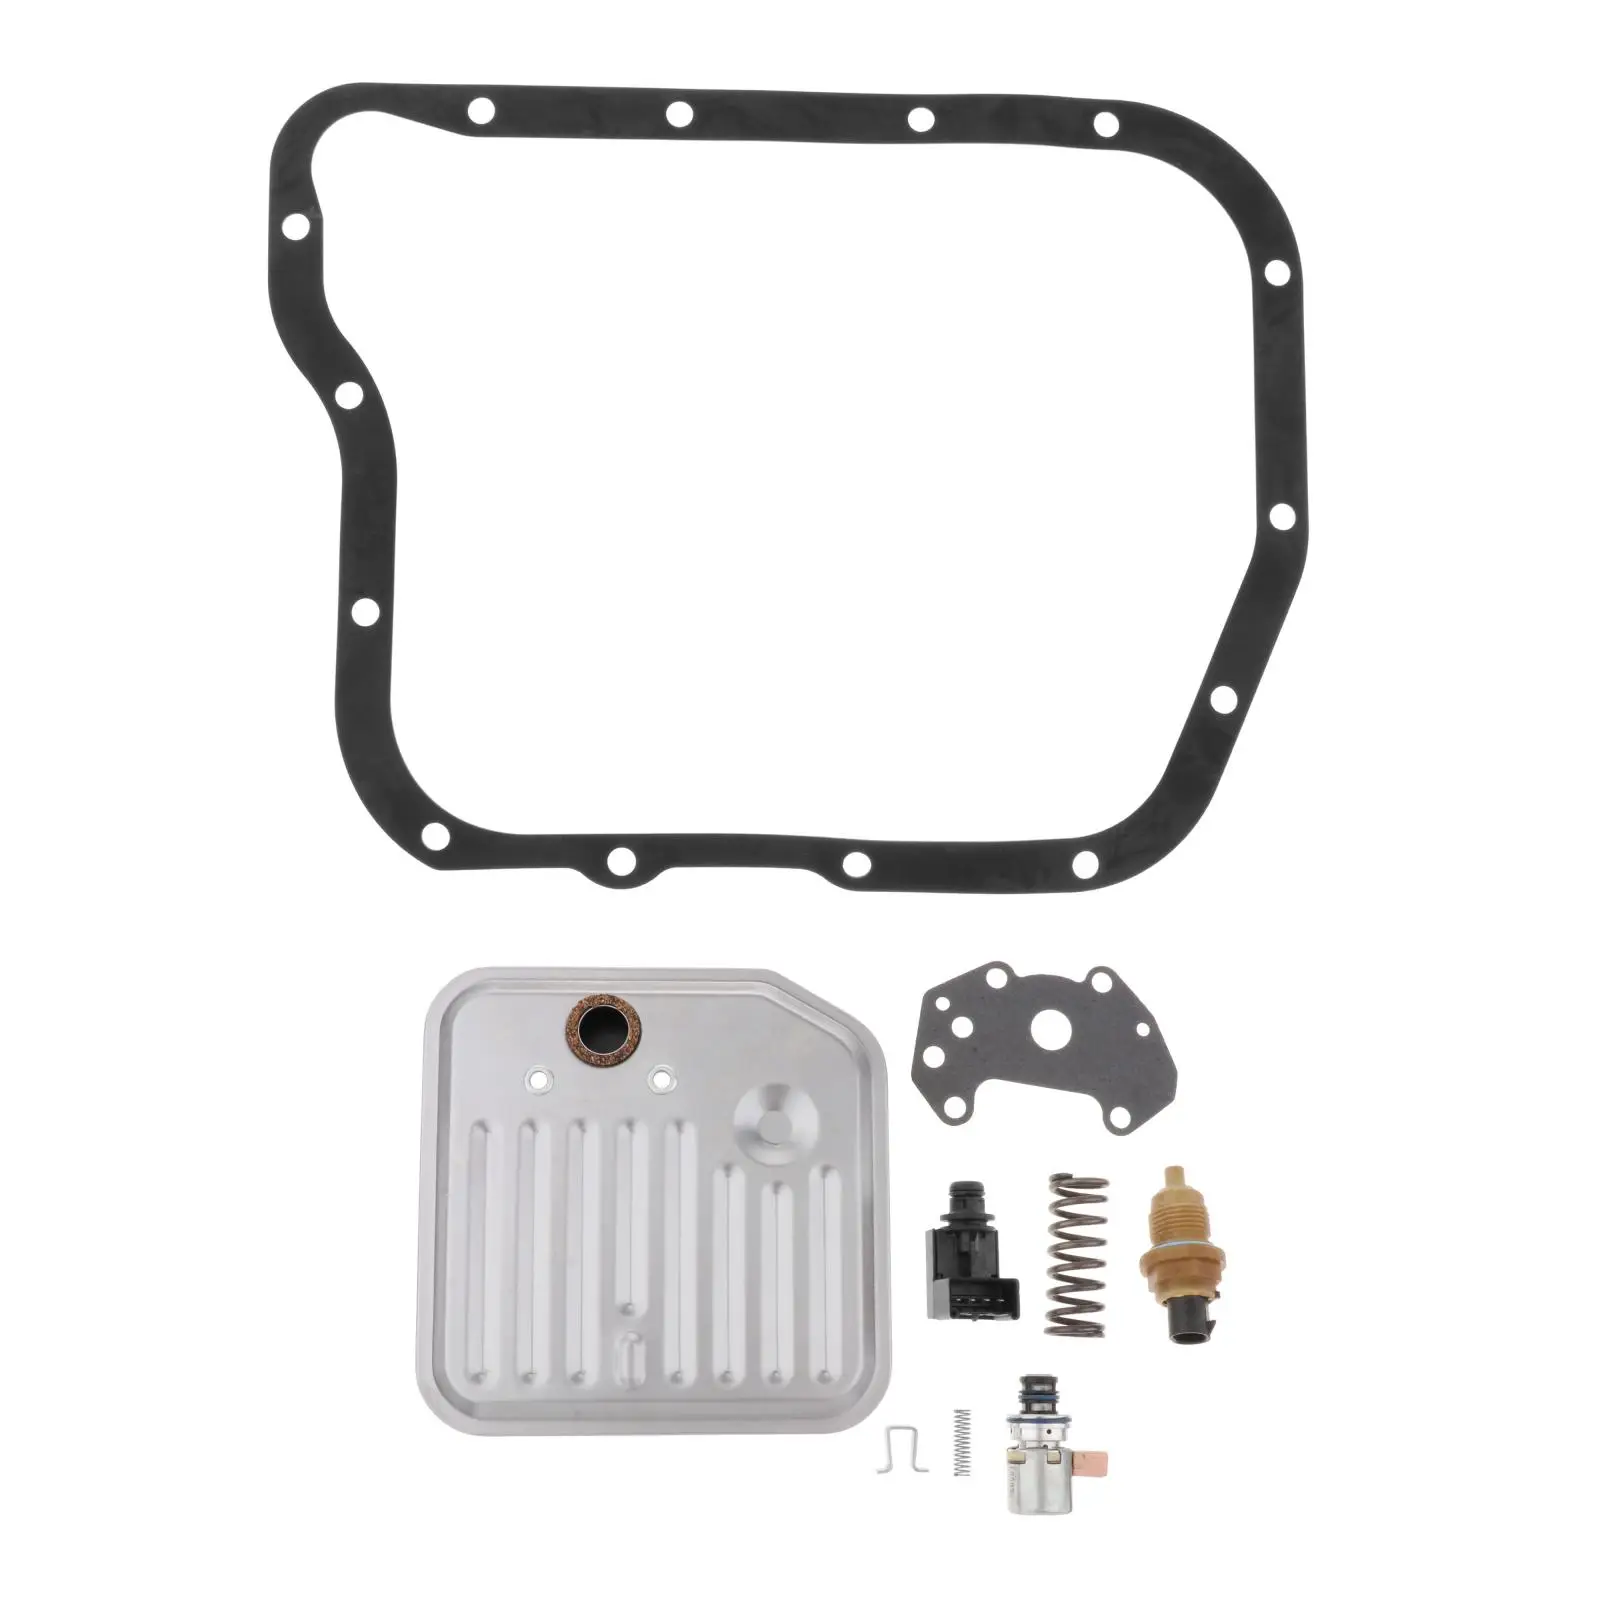 Premium Professional 4WD Transmission Filter Kit w/ Solenoid & Sensor Set for Chrysler 12776F 49309T 22958 22832A